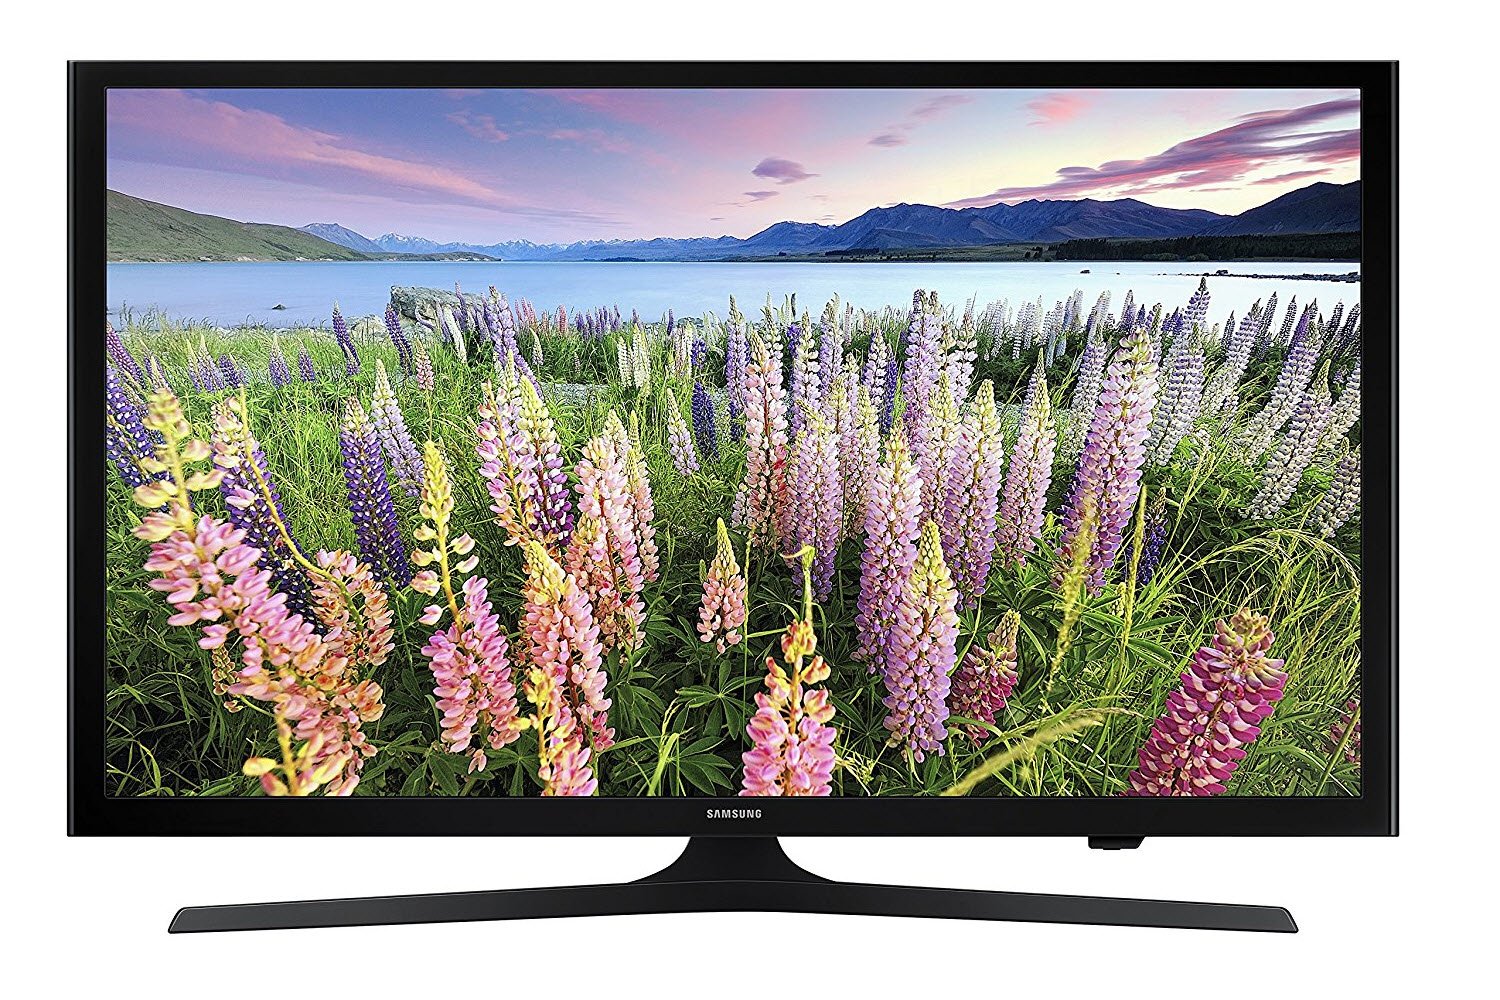 Samsung UN43J5200 43-Inch 1080p Smart LED TV